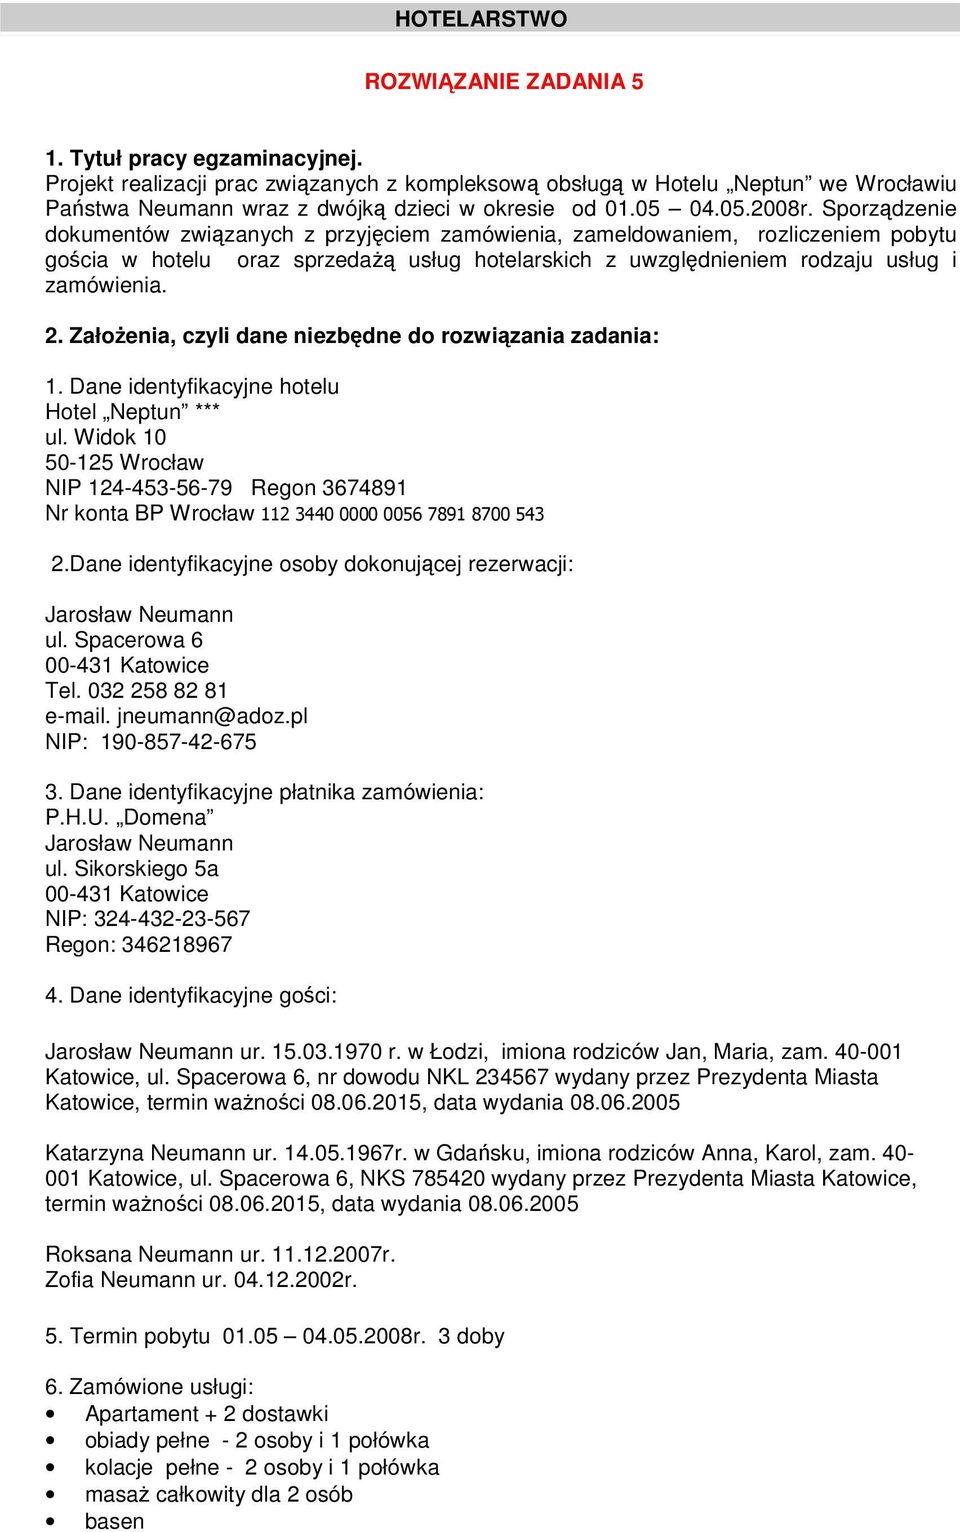 2. Załoenia, czyli dane niezbdne do rozwizania zadania: 1. Dane identyfikacyjne hotelu Hotel Neptun *** ul. Widok 10 50-125 Wrocław NIP 124-453-56-79 Regon 3674891 Nr konta BP Wrocław 2.